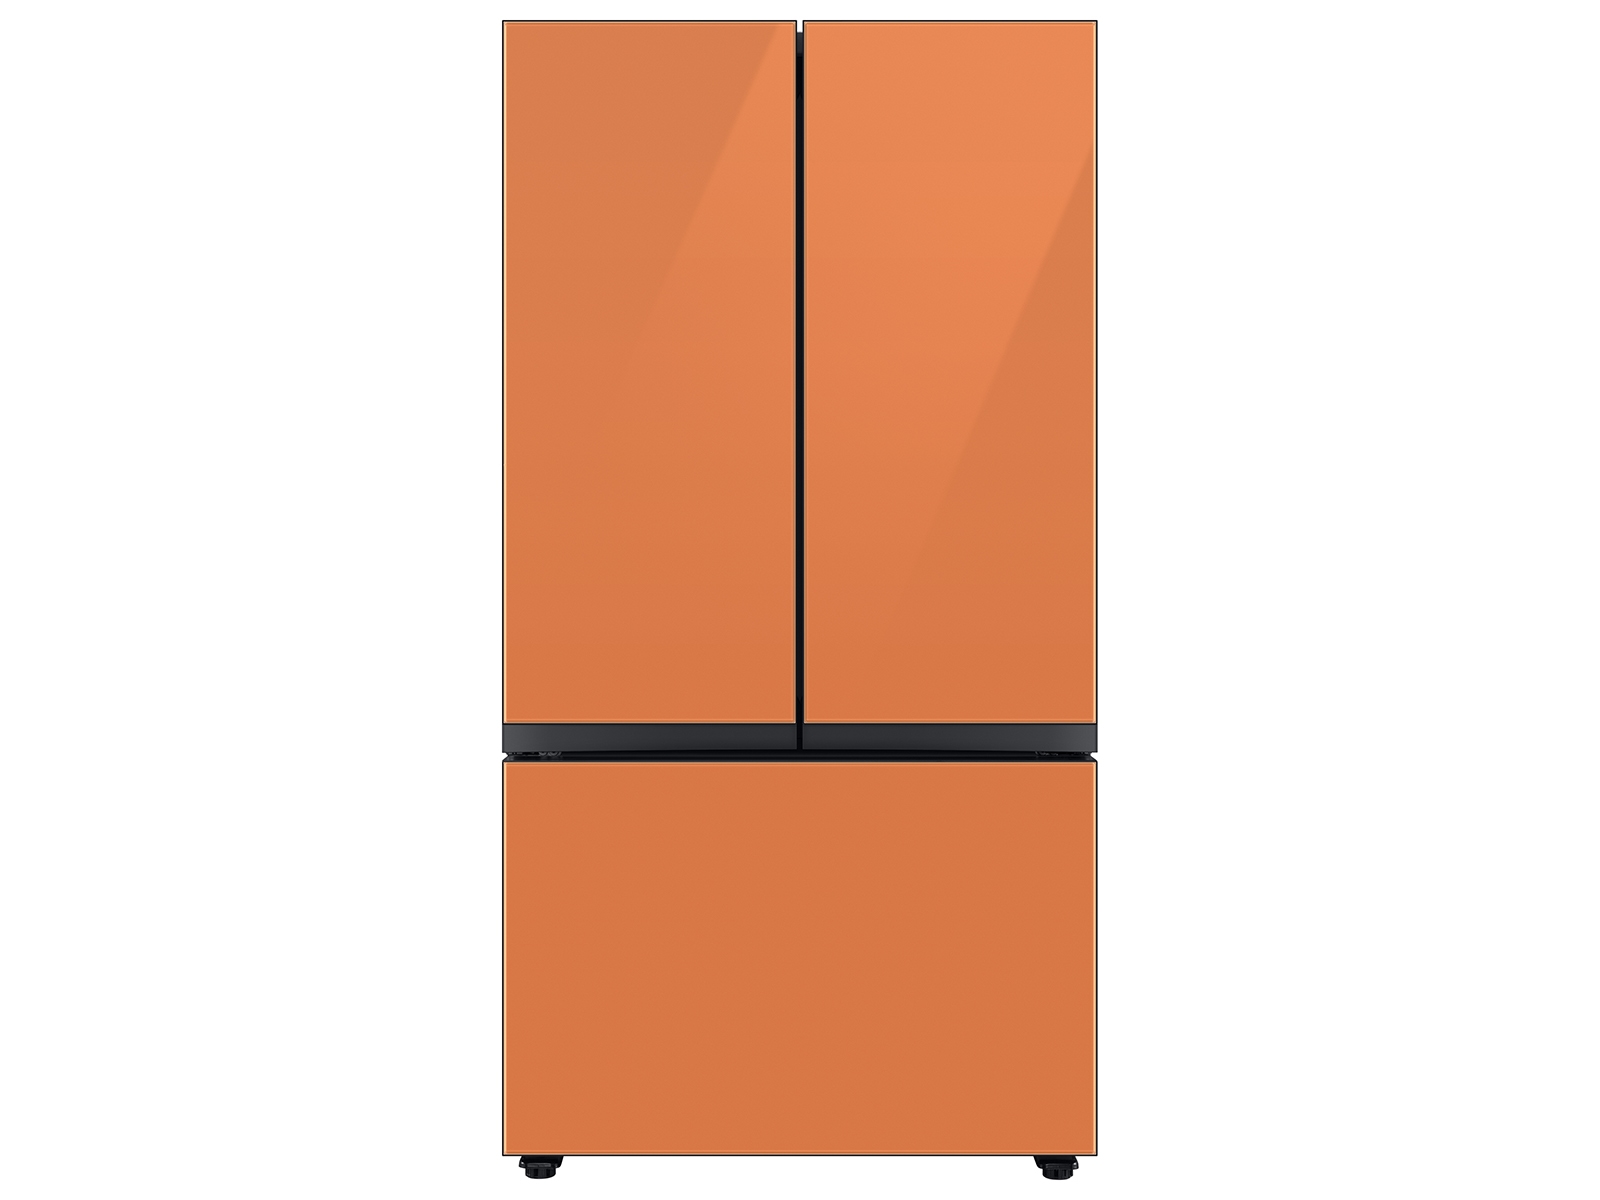 Bespoke 3-Door French Door Refrigerator (30 cu. ft.) with Beverage Center™ in Clementine Glass